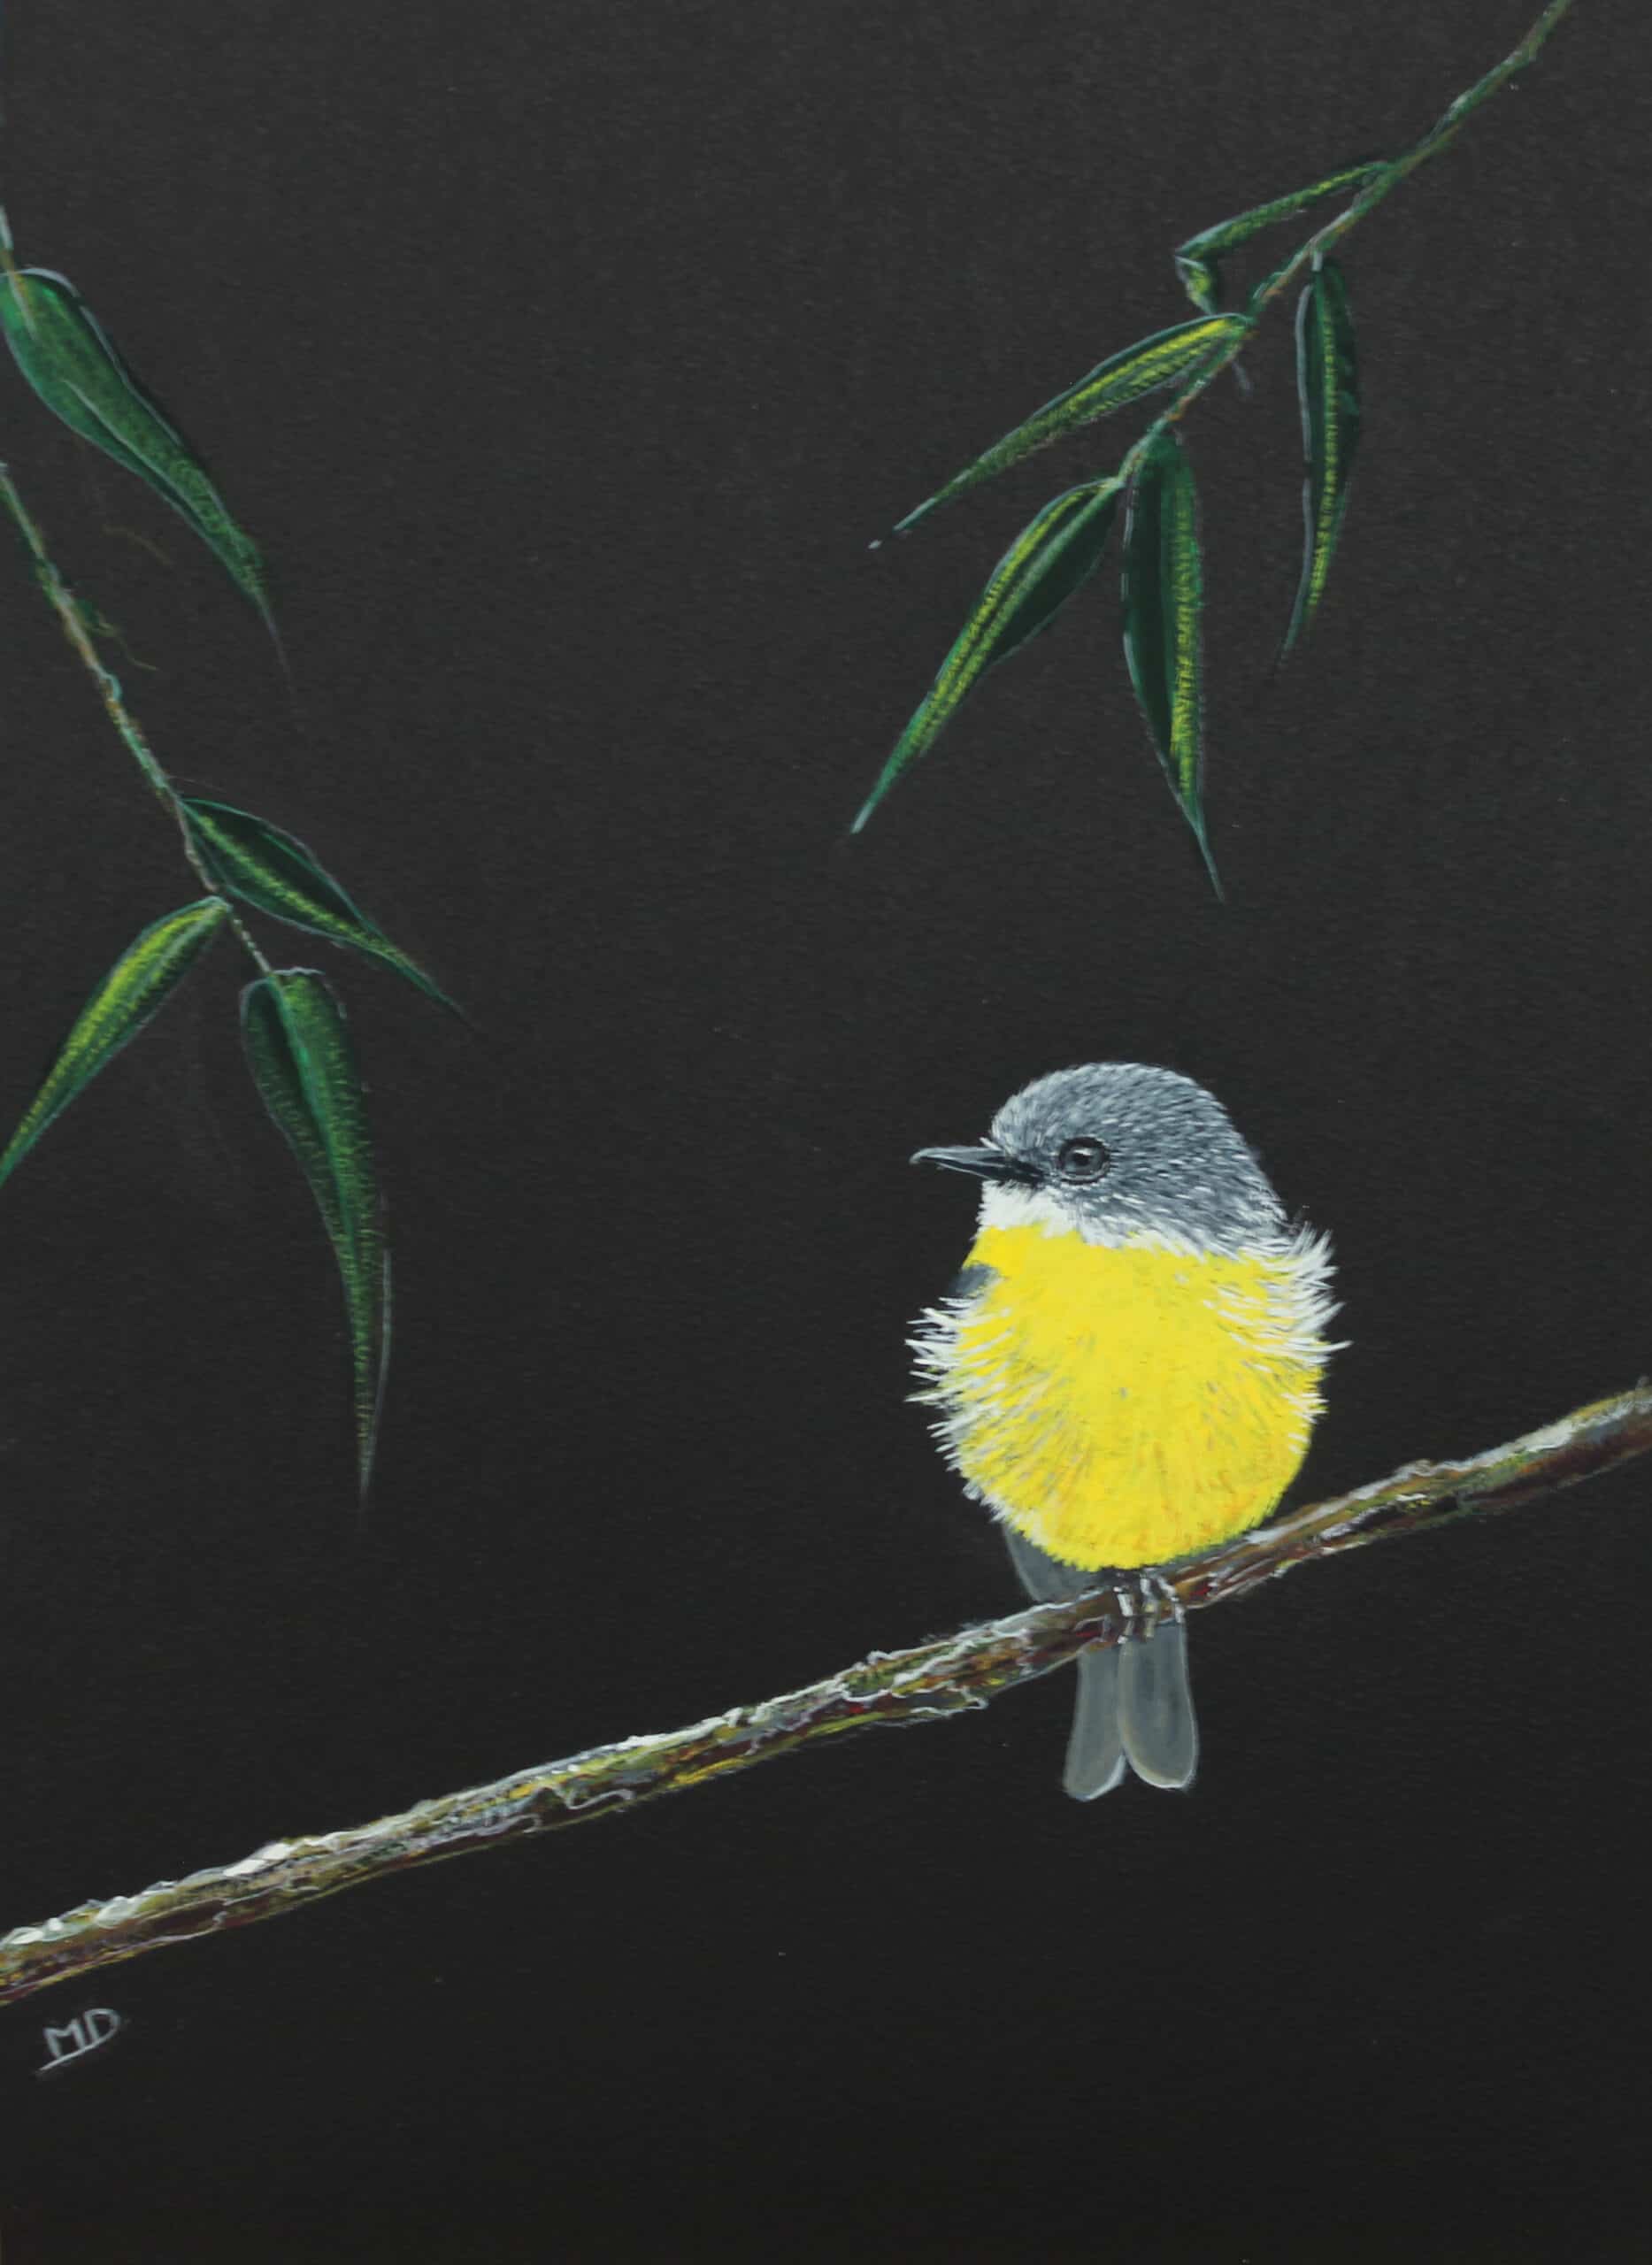 œuvre d'art, animalier, gouache sur papier A4, david morel artiste, oiseau jaune sur une branche sur fond noir